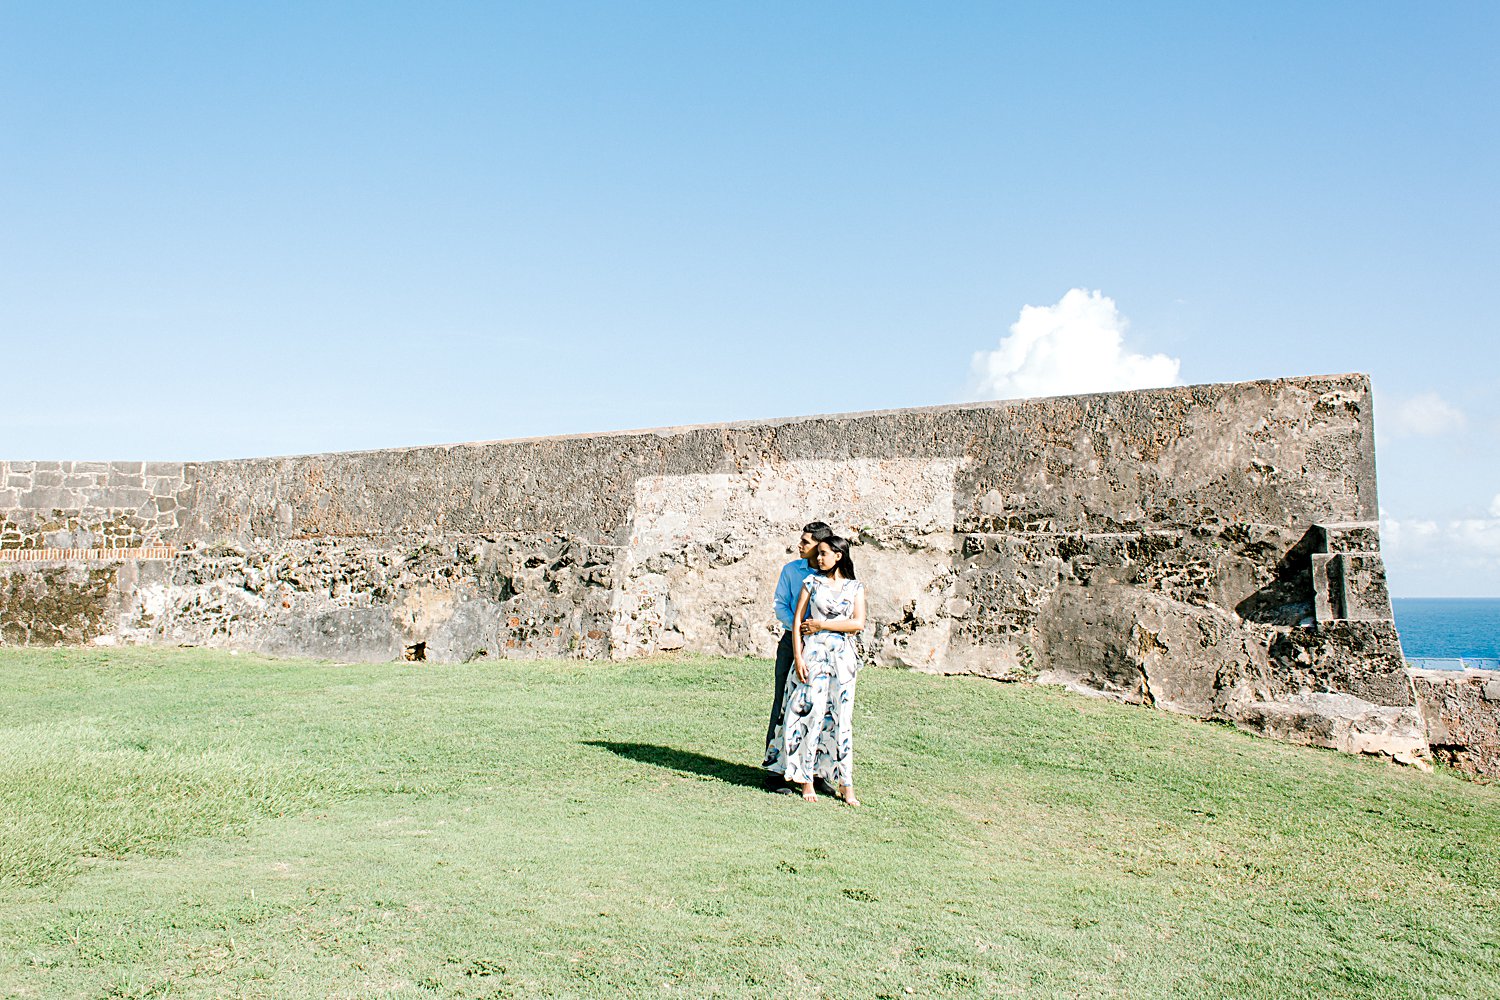 Engagement portrait session in San Juan, Puerto Rico.